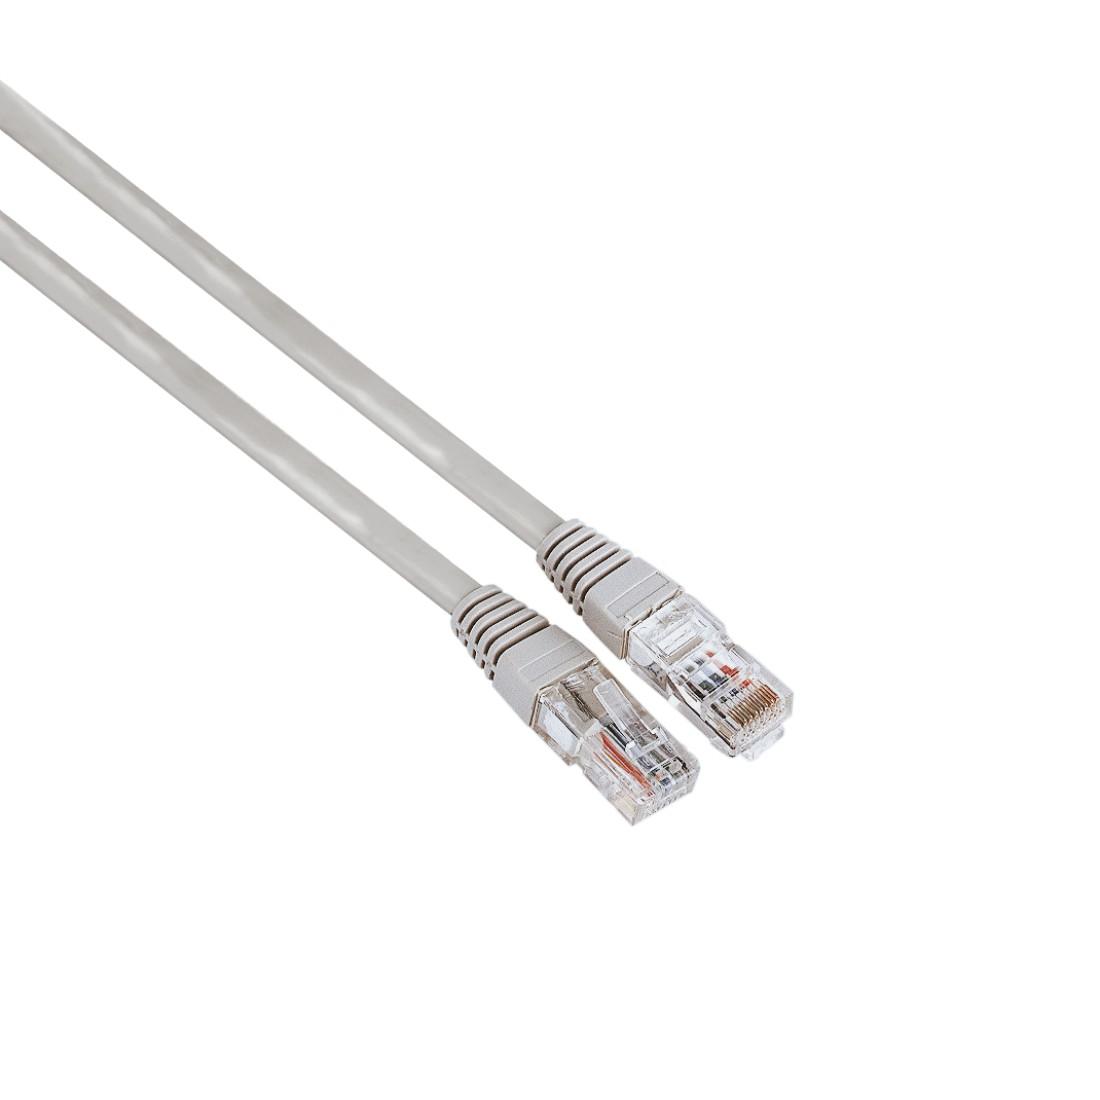 Мрежов кабел HAMA, CAT 5e, FTP/UTP, RJ-45 - RJ-45, 3 m, екраниран, сив, булк опаковка-1